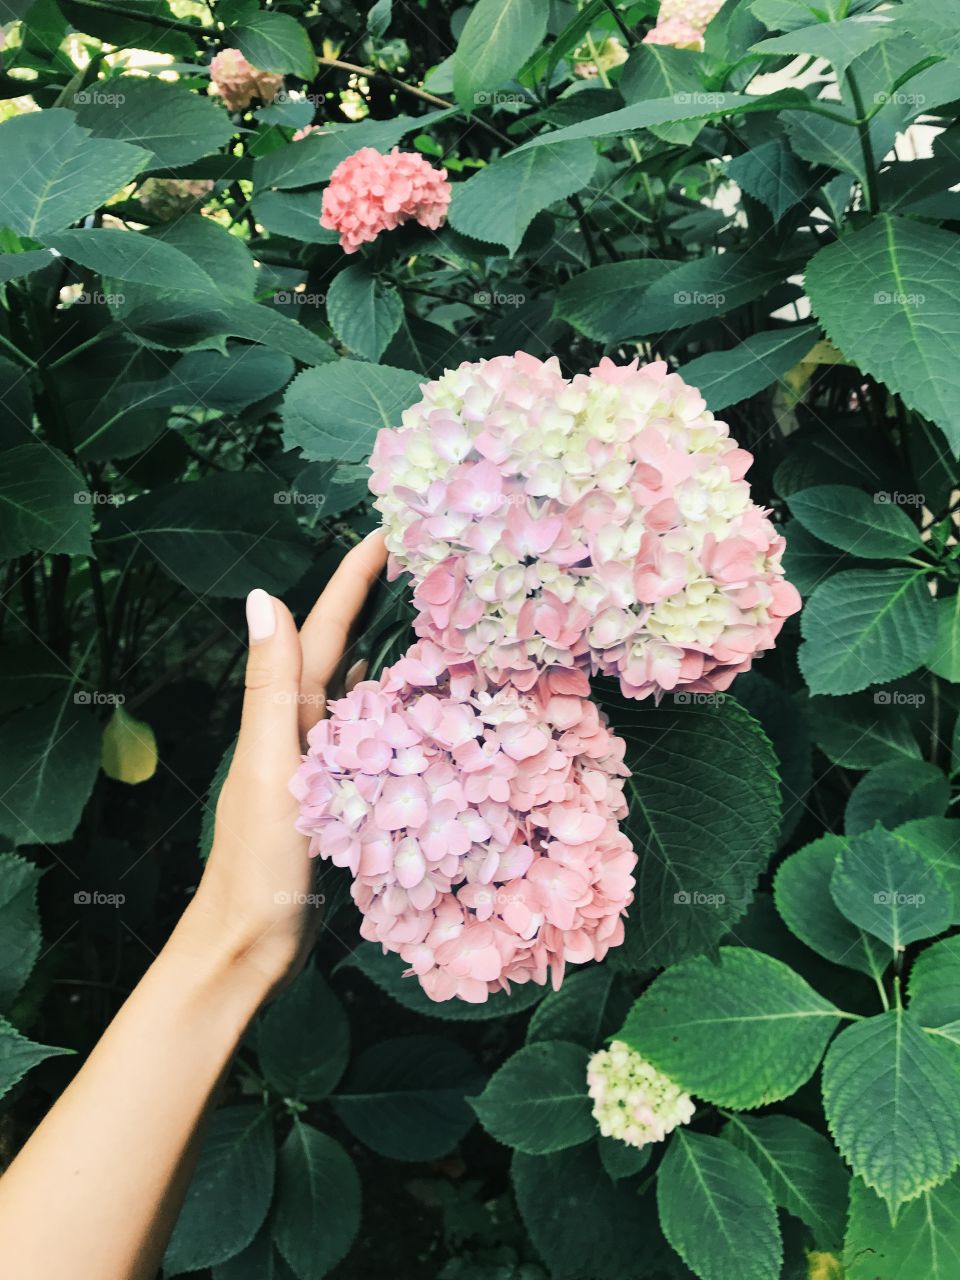 Pink flower, gartensia, girl's hand, closeup. Plants, garden, grass, summer